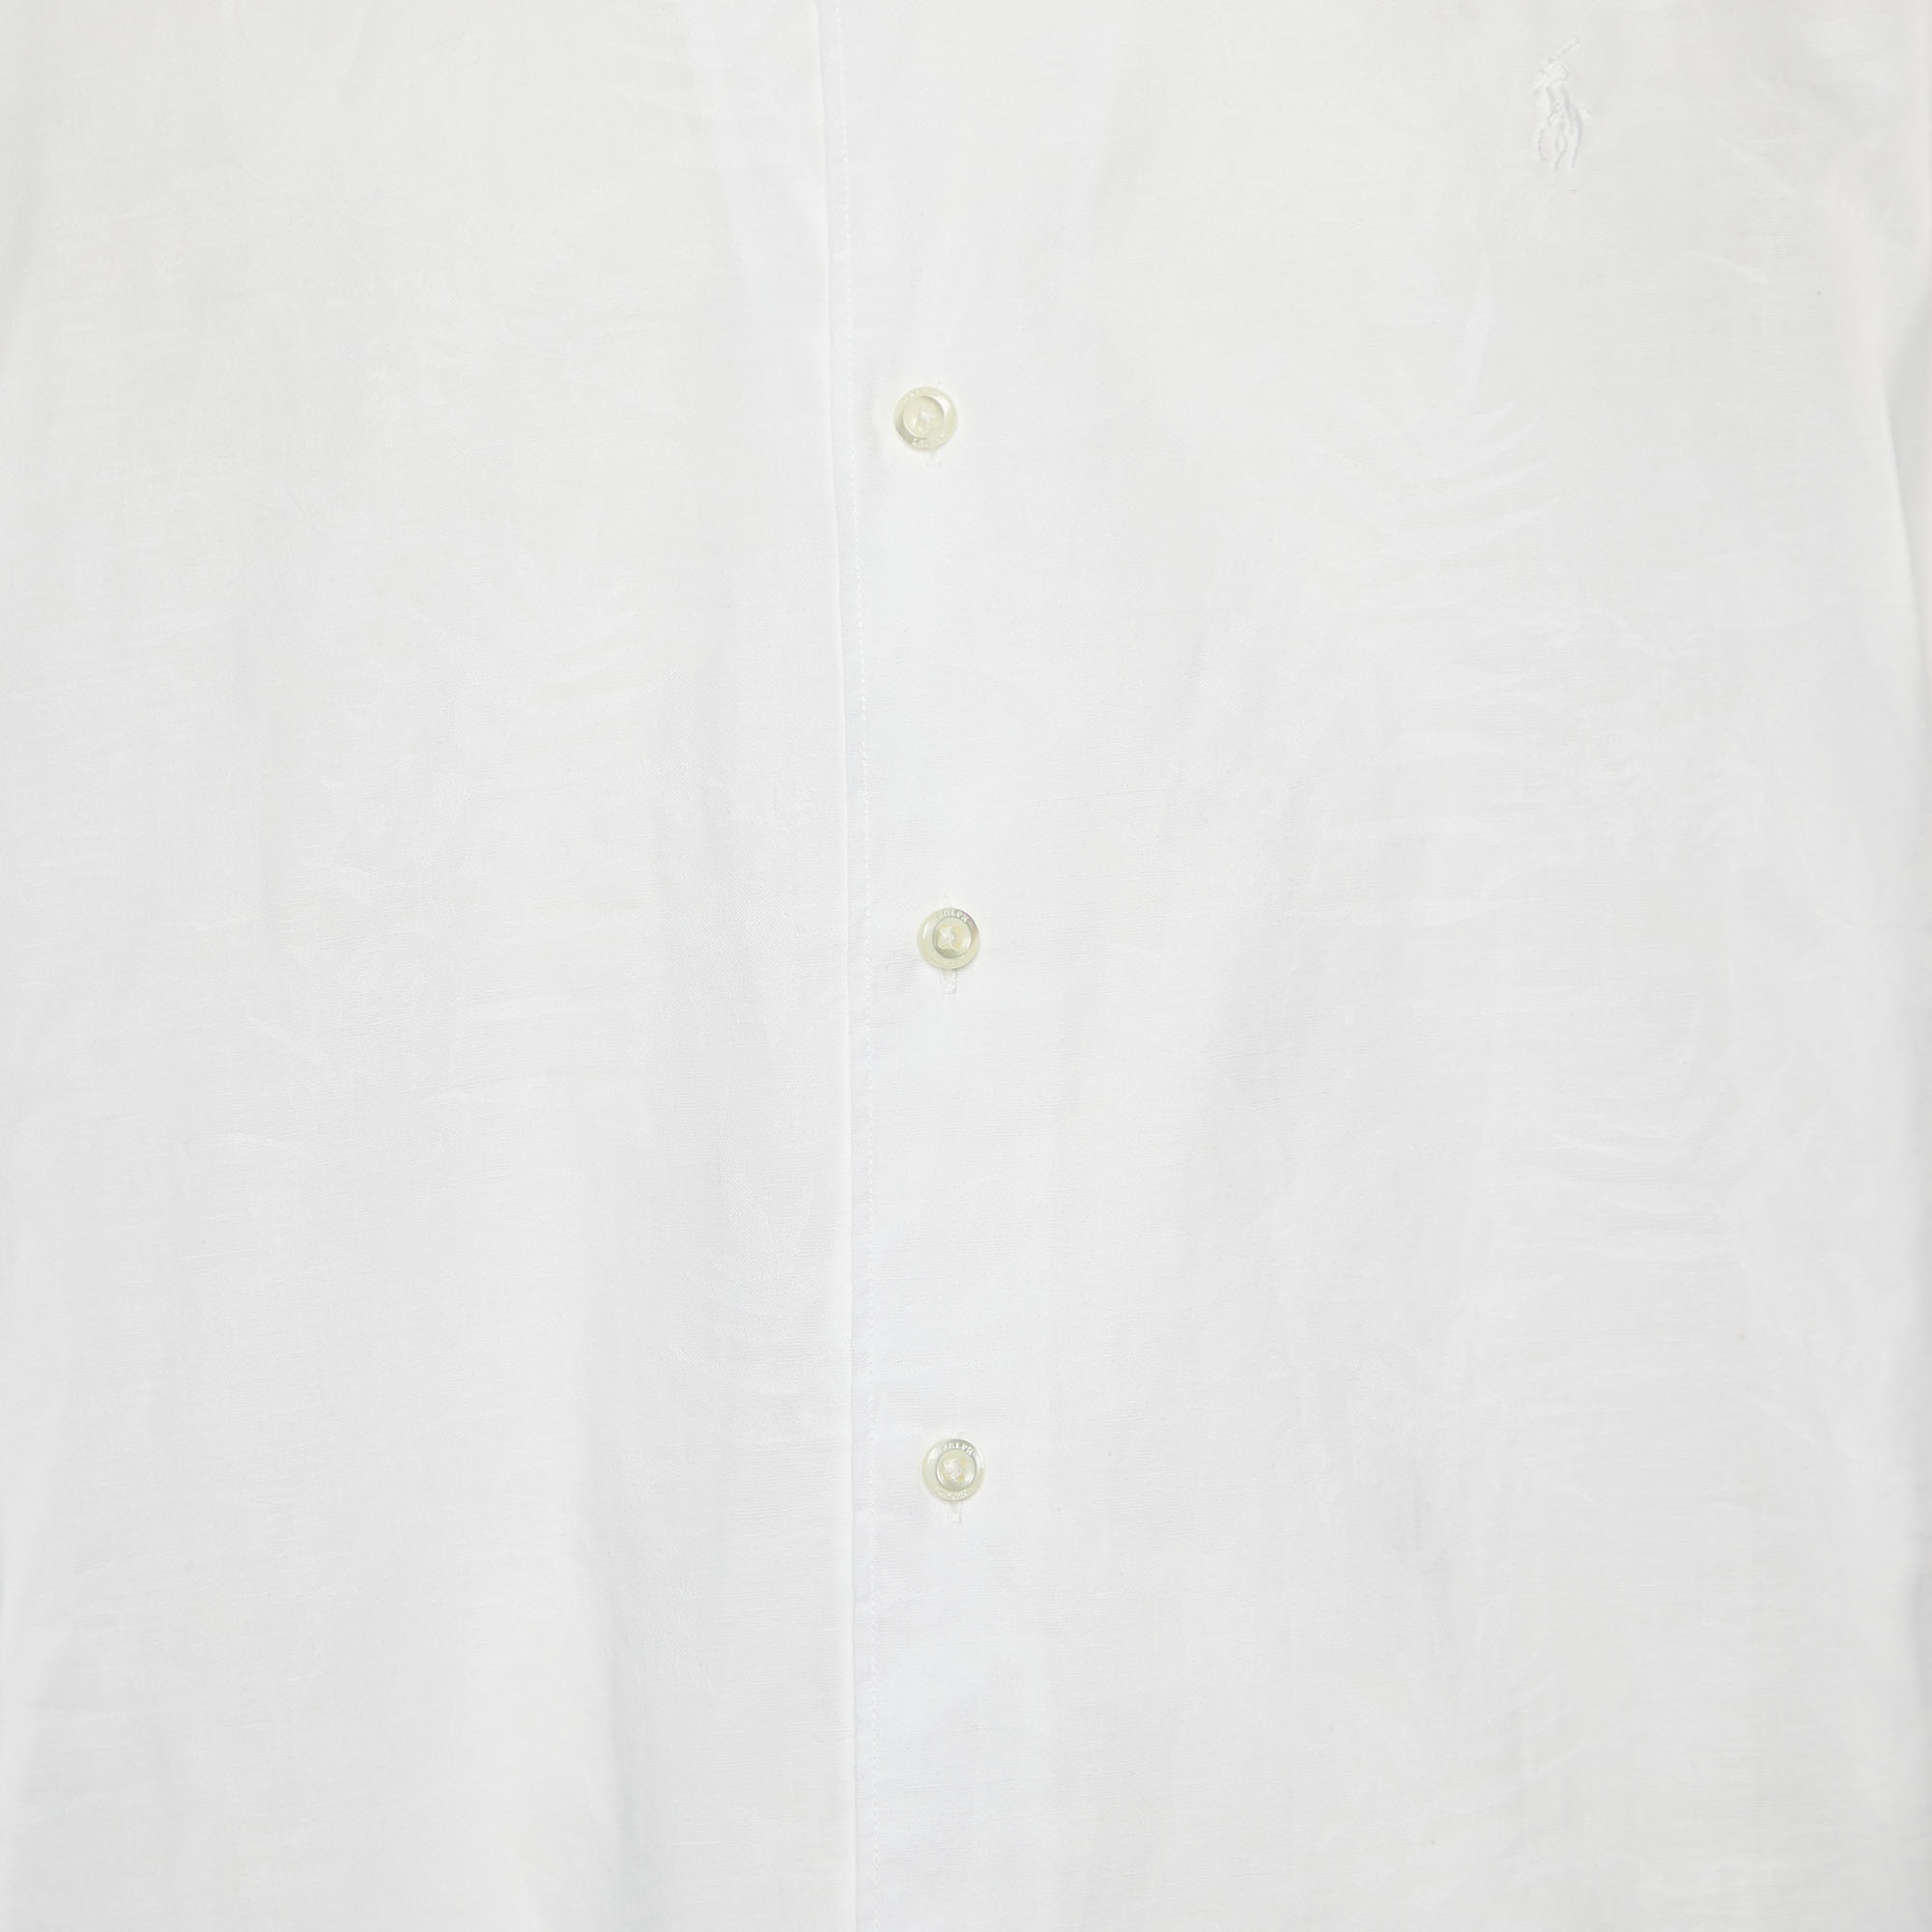 Polo Ralph Lauren White Patterned Linen Shirt 2XL